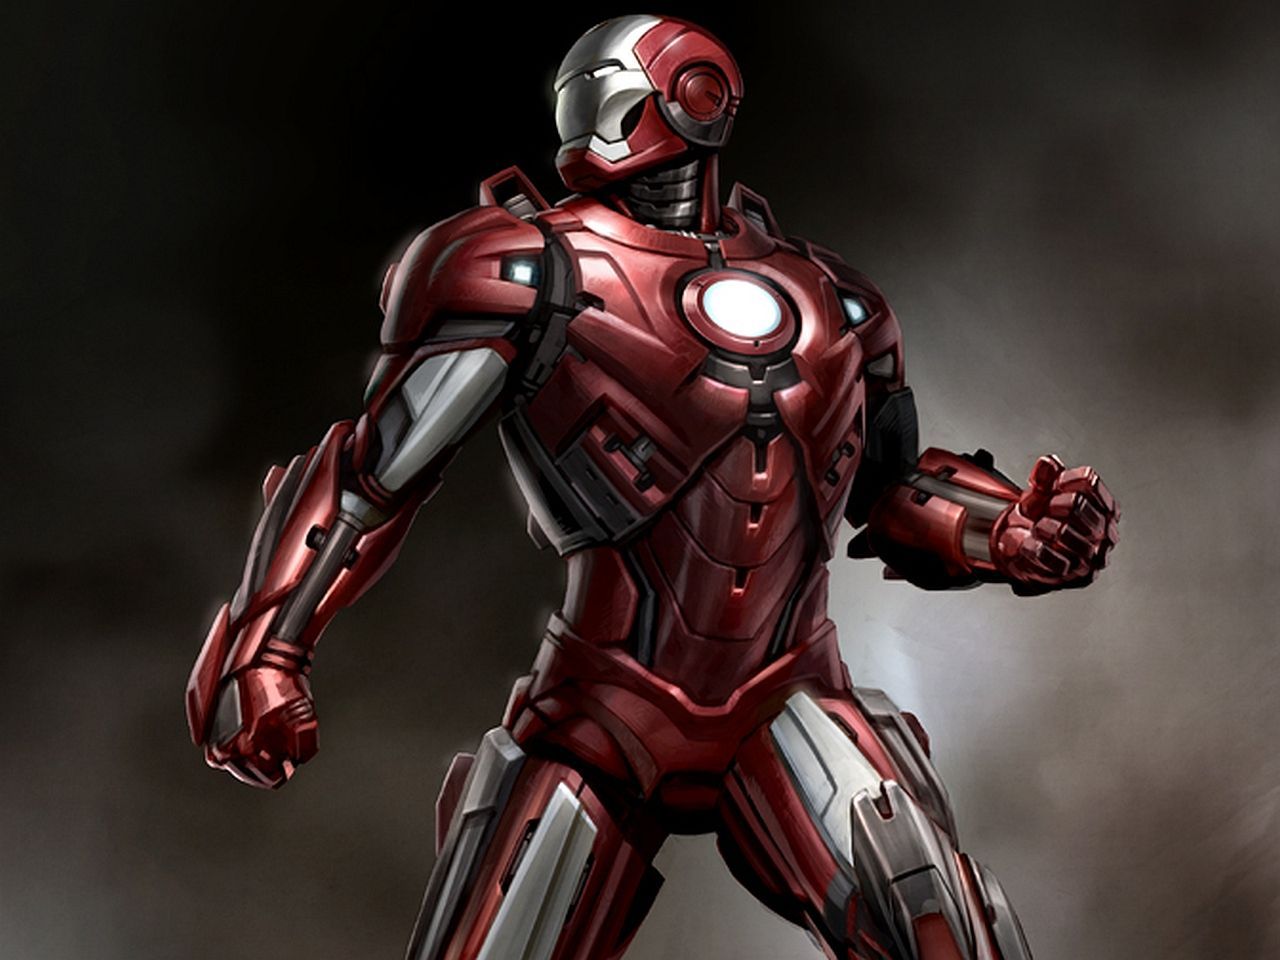 Iron man Movie Wallpaper HD Desktop • iPhones Wallpapers